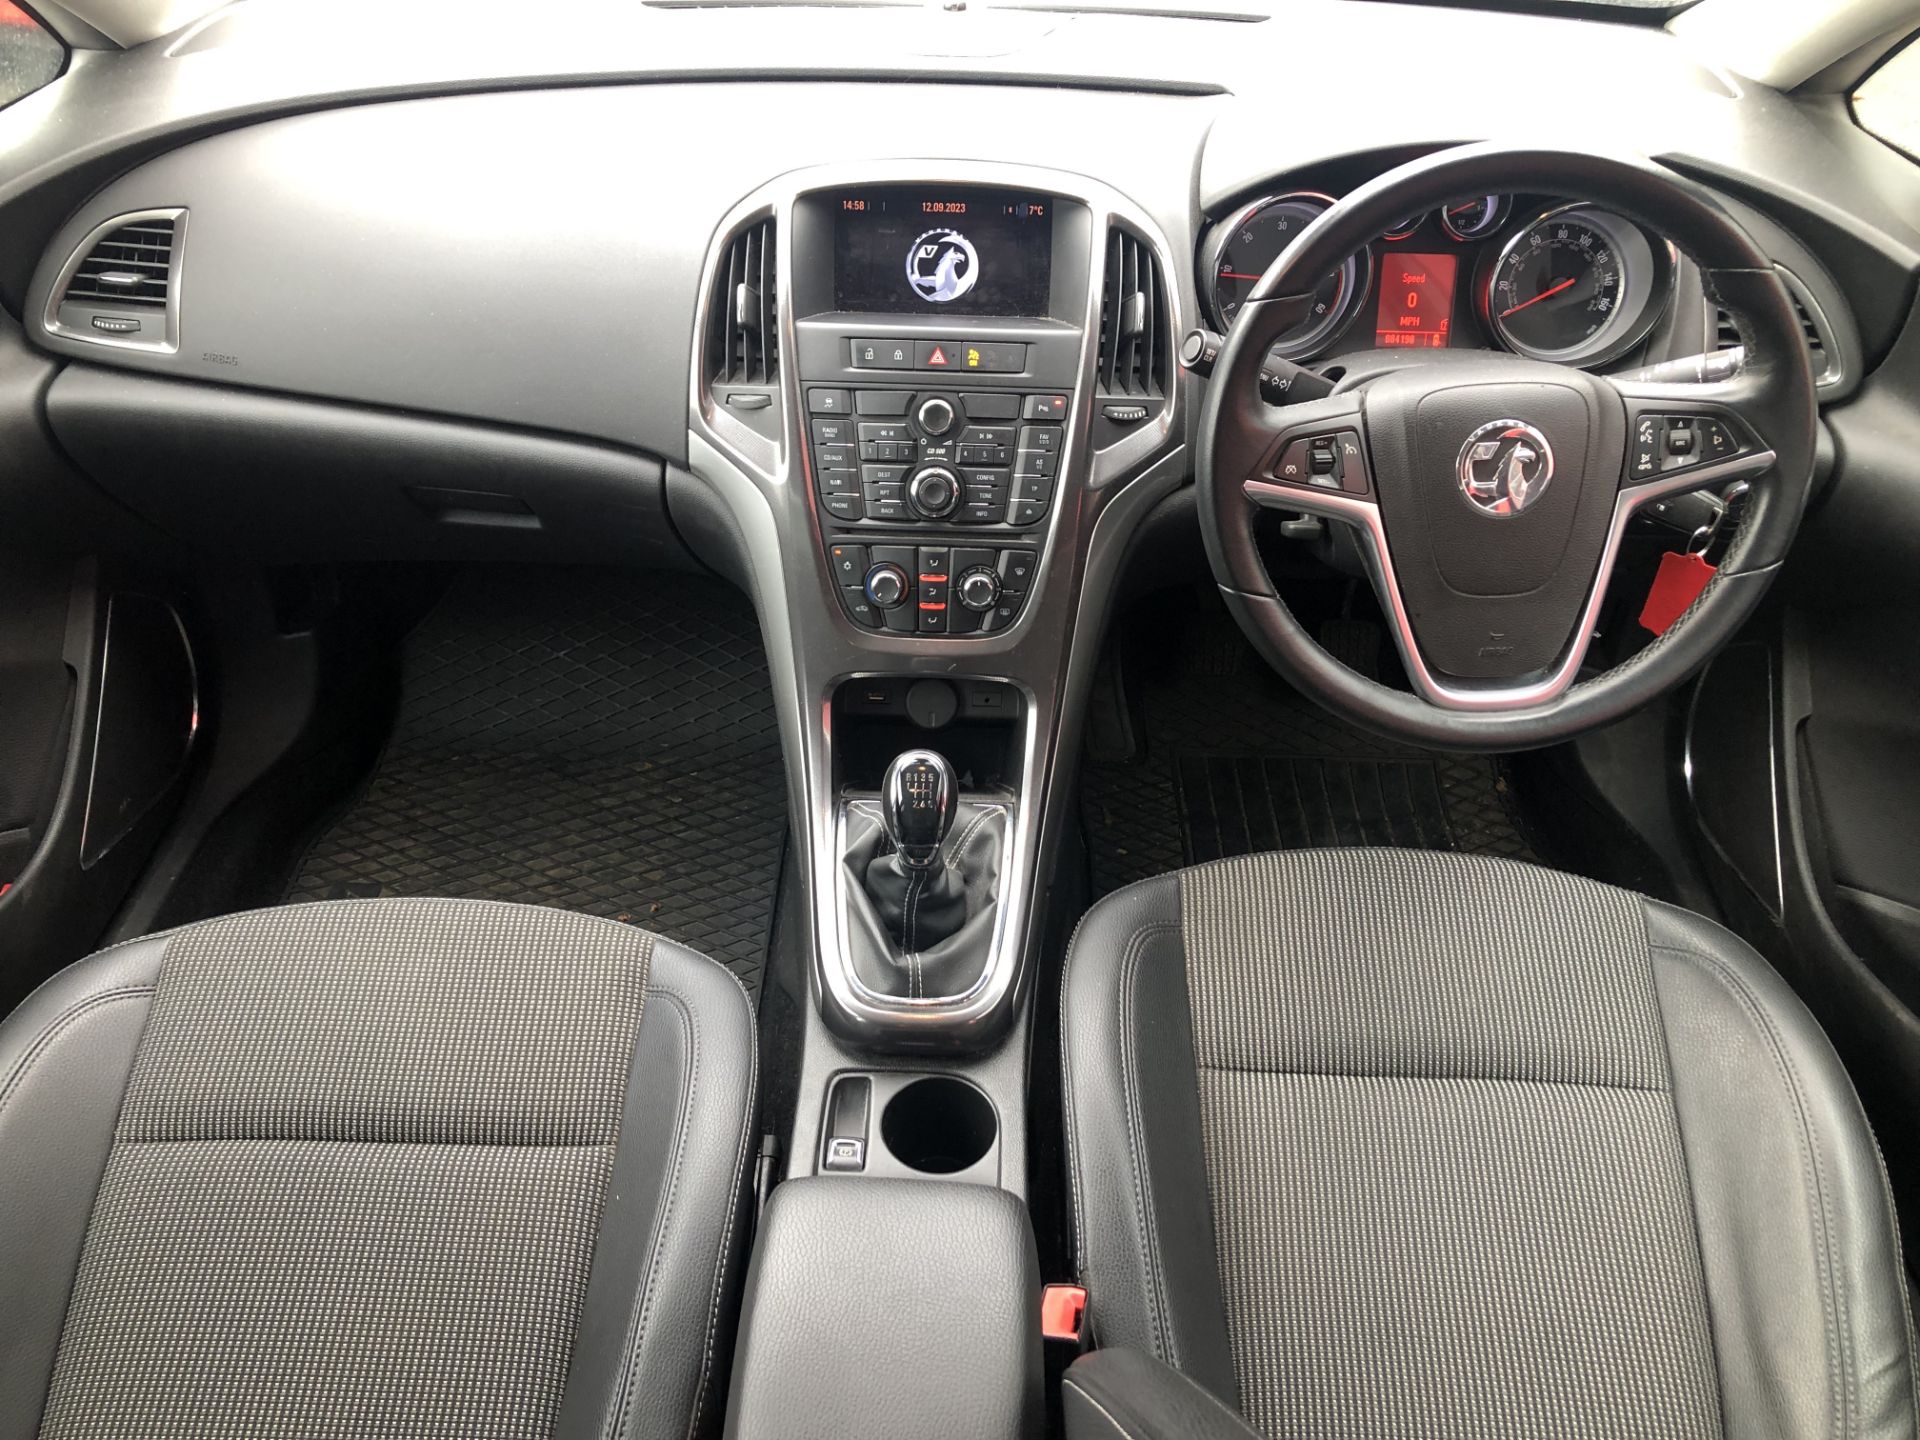 Vauxhall Astra 1.7 CDTi 16v (110ps) SE Sports Tourer, Registration: VK60TRZ, Date First - Image 7 of 8